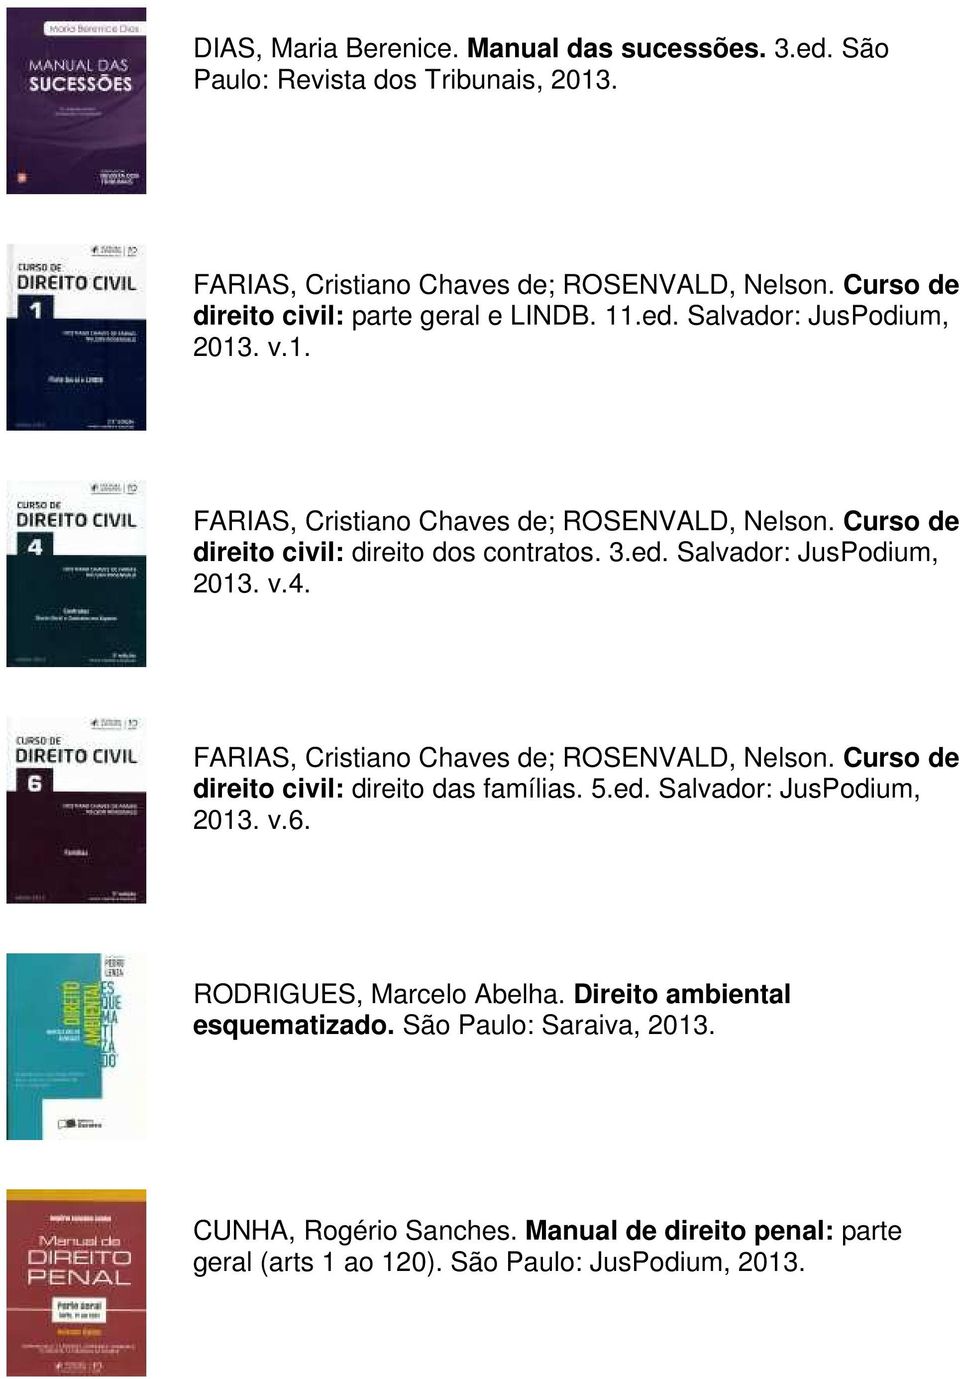 Curso de direito civil: direito dos contratos. 3.ed. Salvador: JusPodium, 2013. v.4. FARIAS, Cristiano Chaves de; ROSENVALD, Nelson.